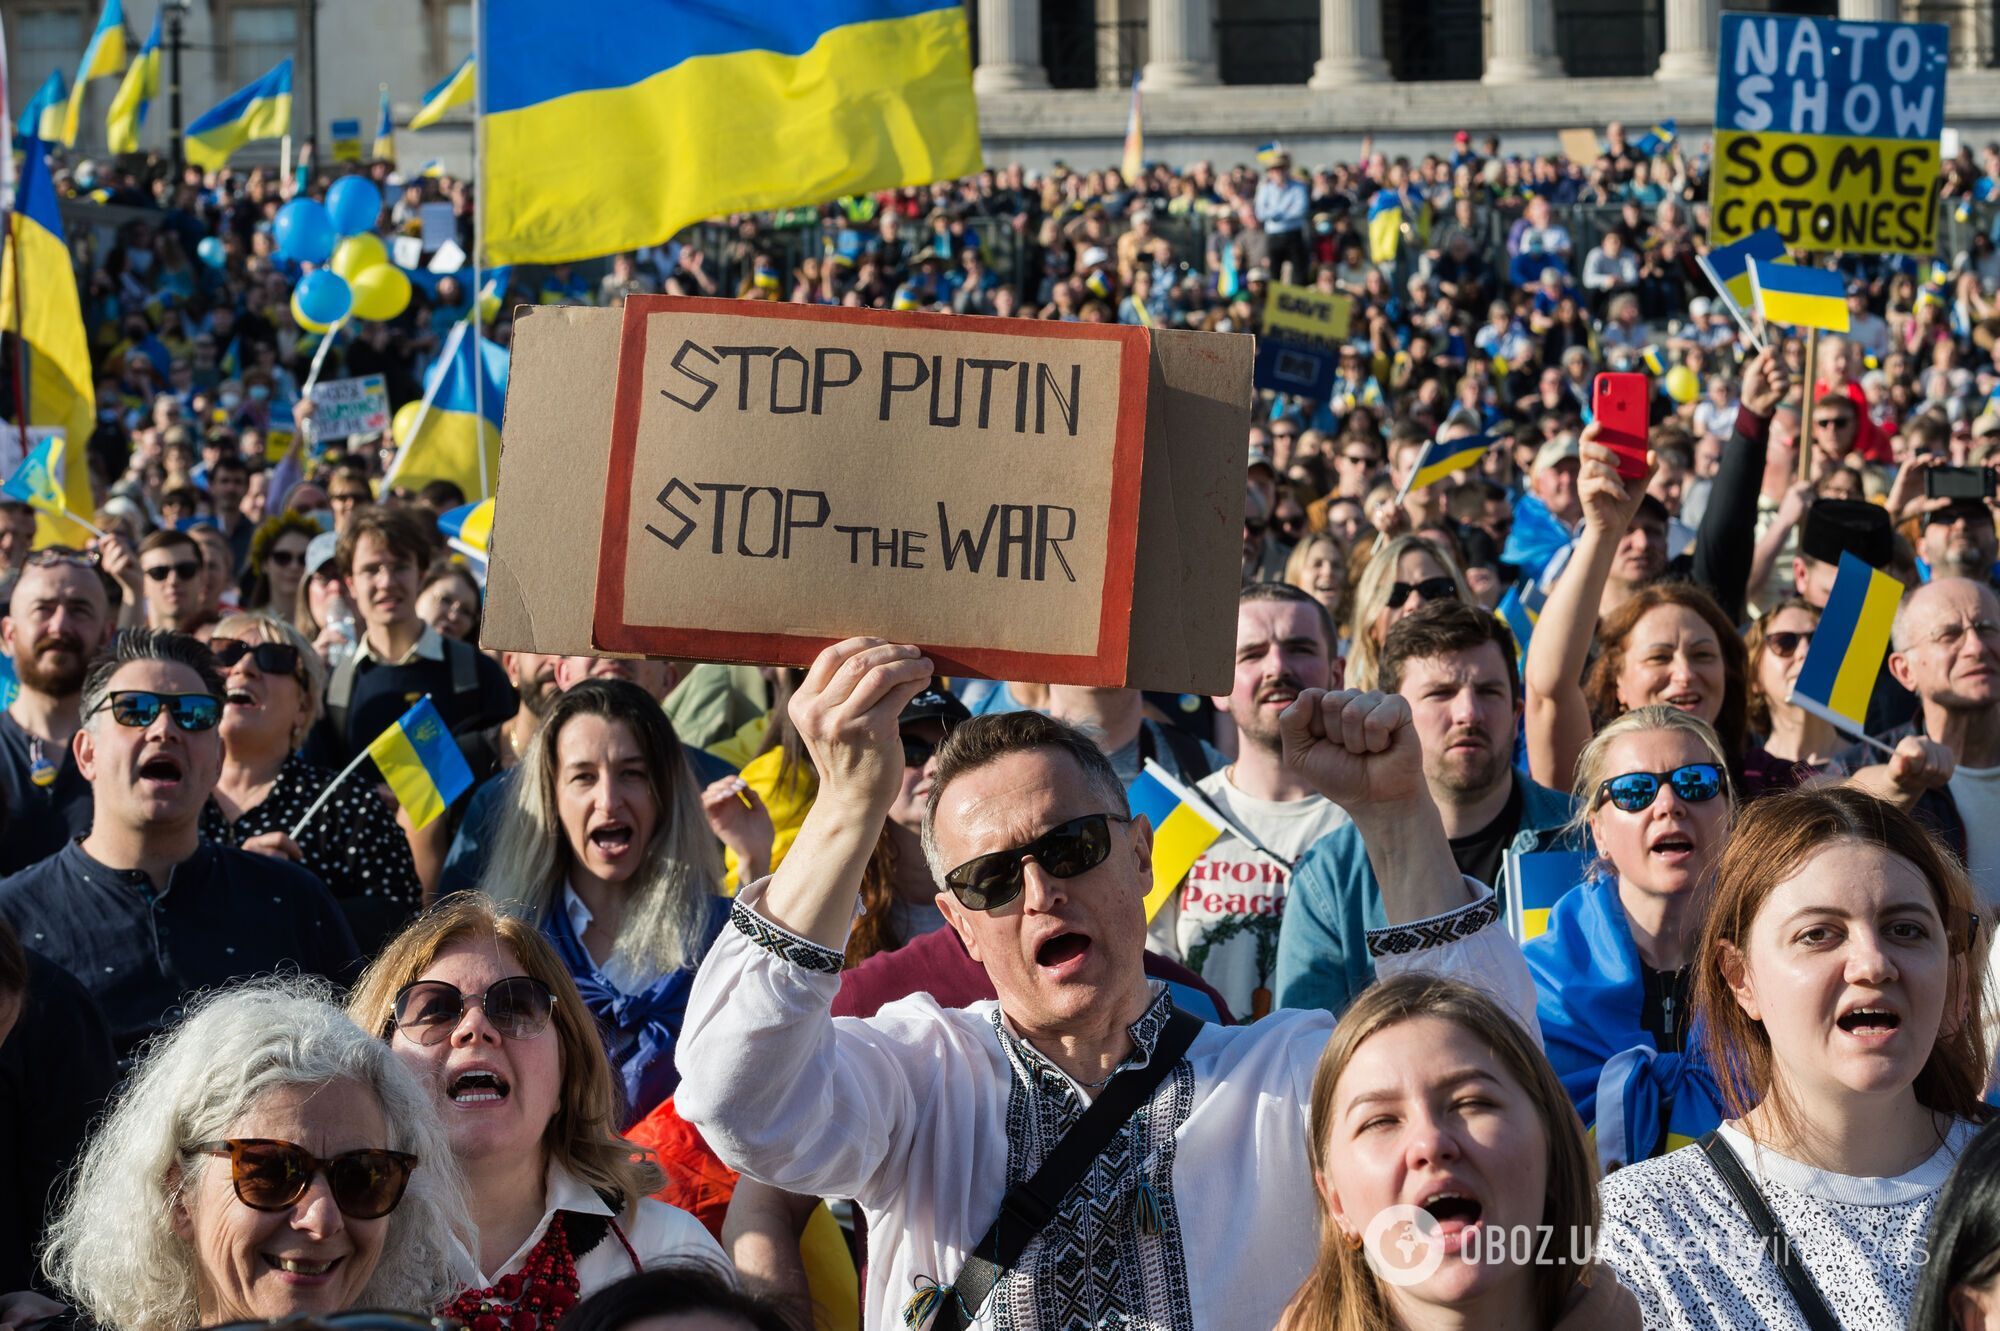 "We stand with Ukraine!": десятки тысяч человек вышли на митинг в поддержку Украины в Лондоне. Фото и видео